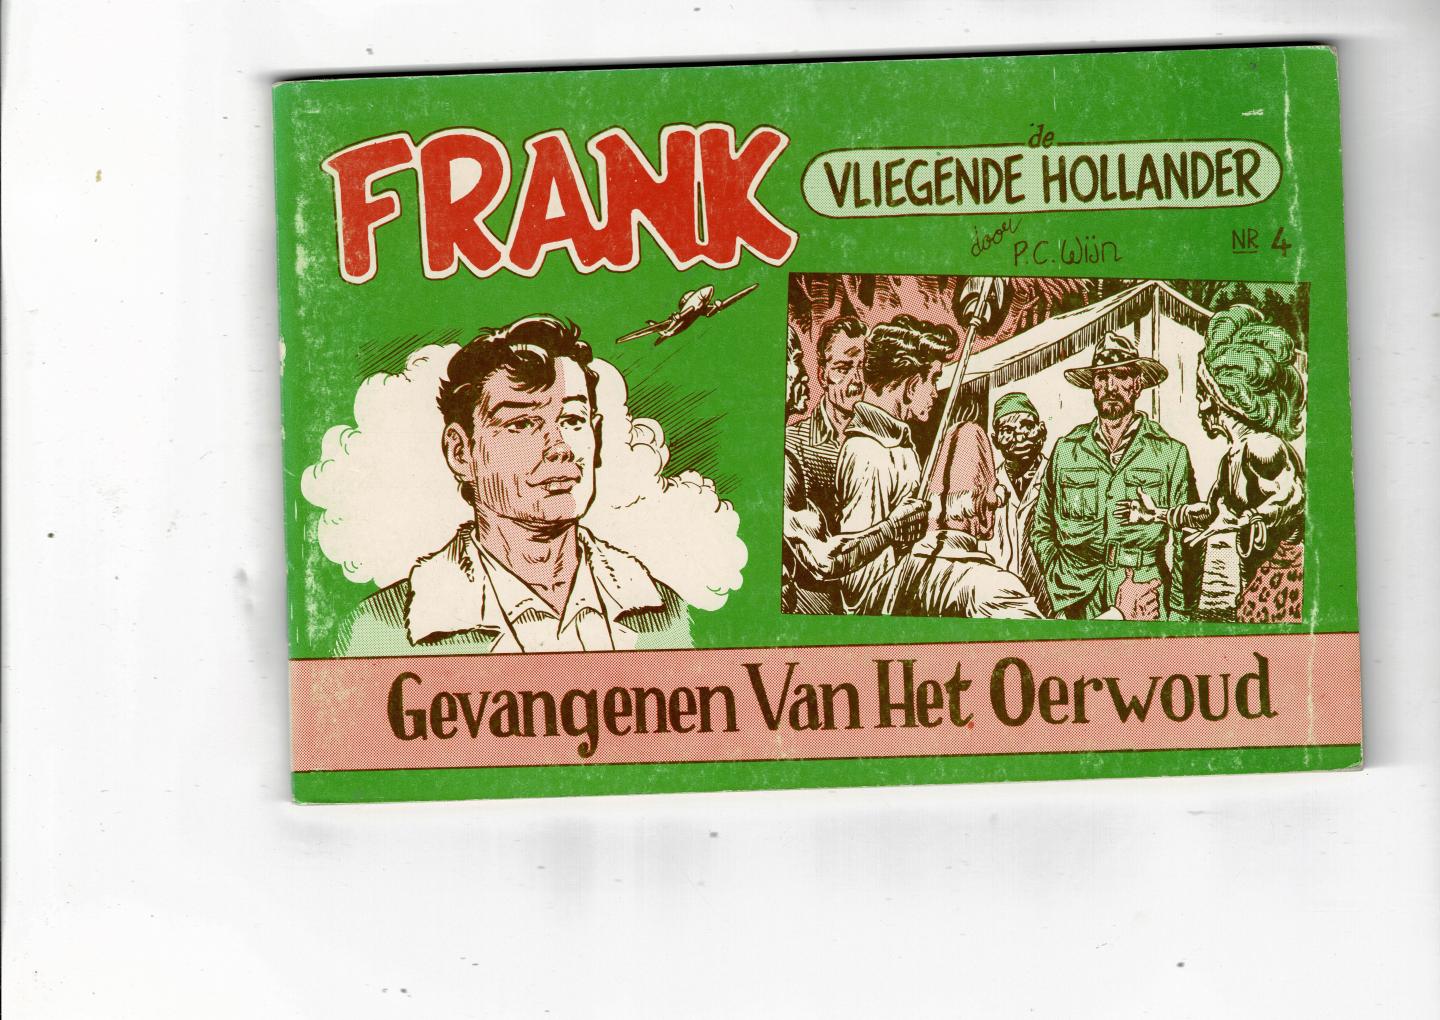 Wijn,Piet - Frank de Vliegende Hollander Gevangenen van Het Oerwoud